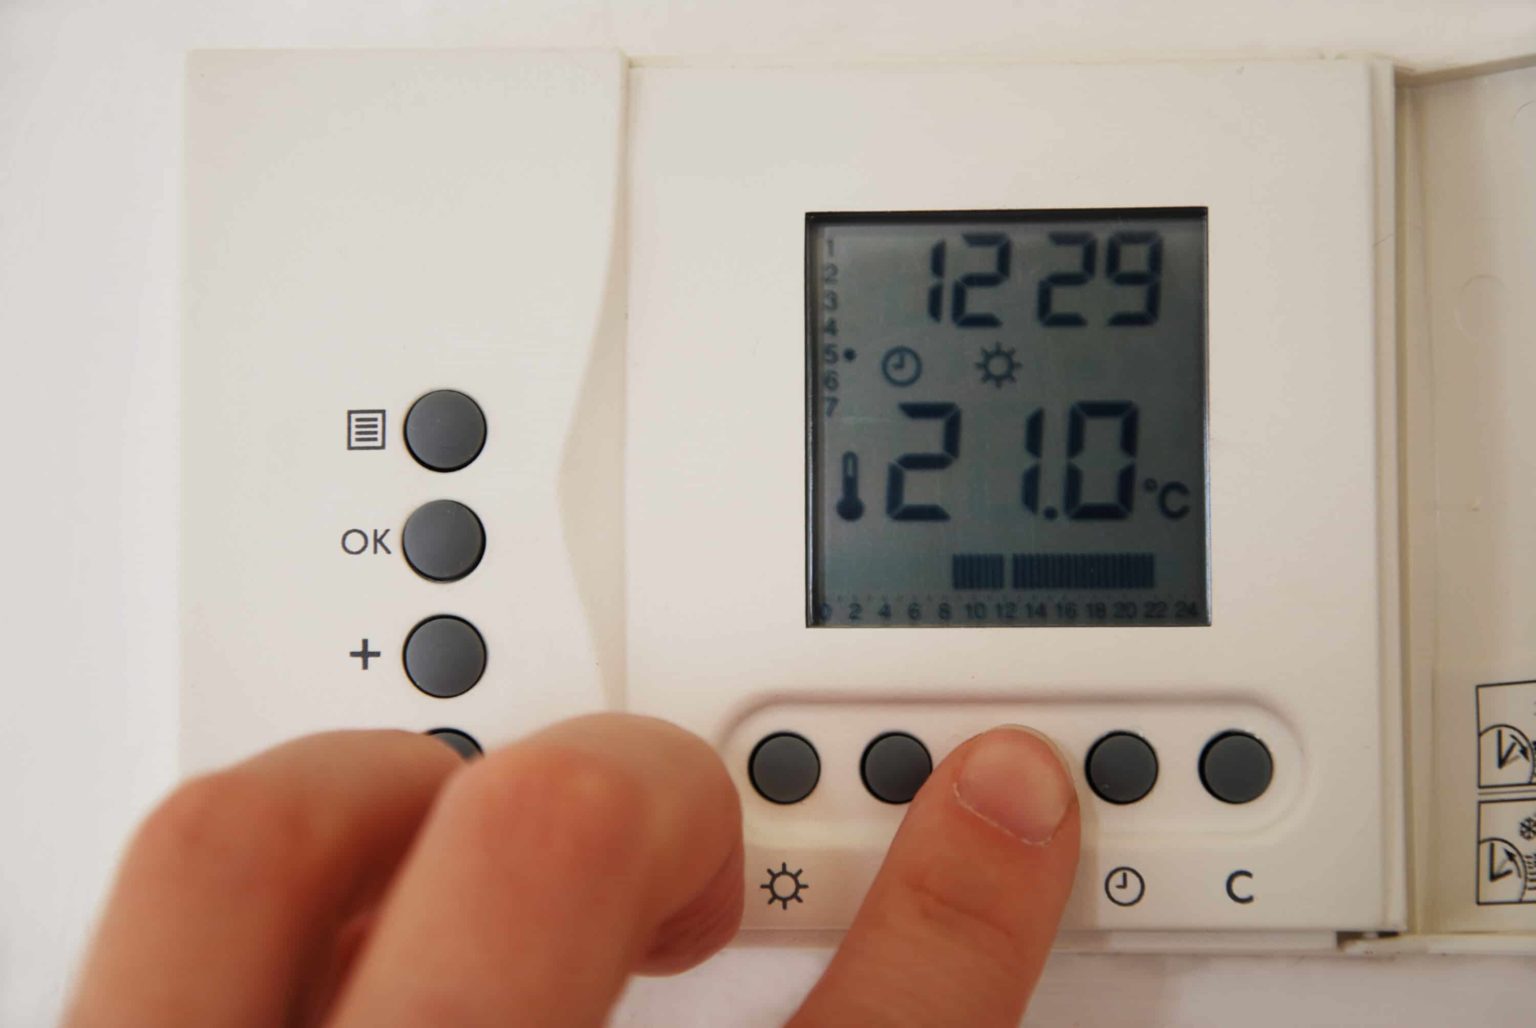 DENA réclame des thermostats numériques obligatoires